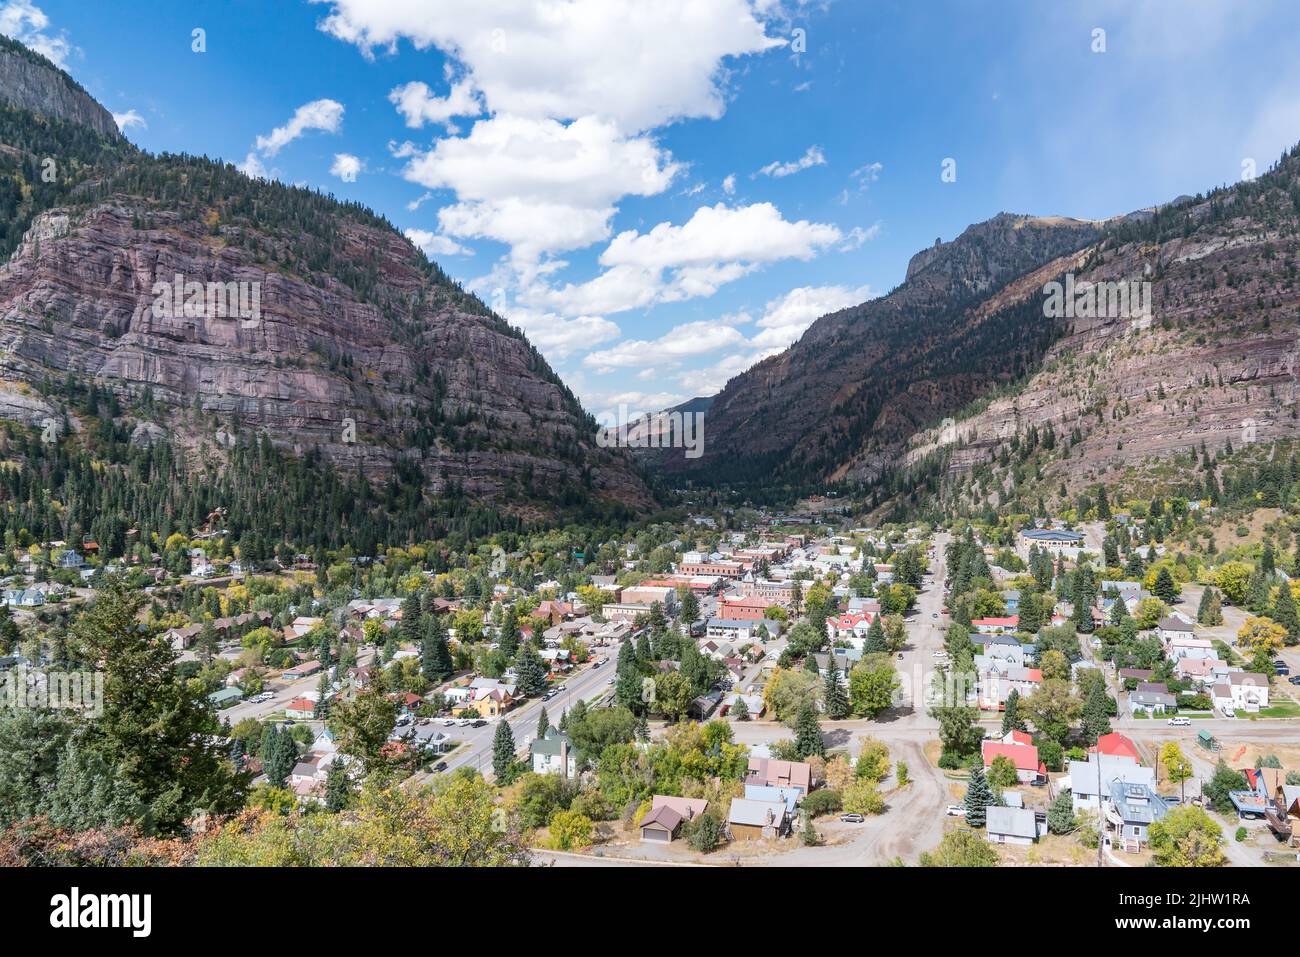 Ouray, Colorado - 29 septembre 2019 : la charmante ville alpine d'Ouray, Colorado, est nichée dans les montagnes San Juan du sud-ouest du Colorado Banque D'Images